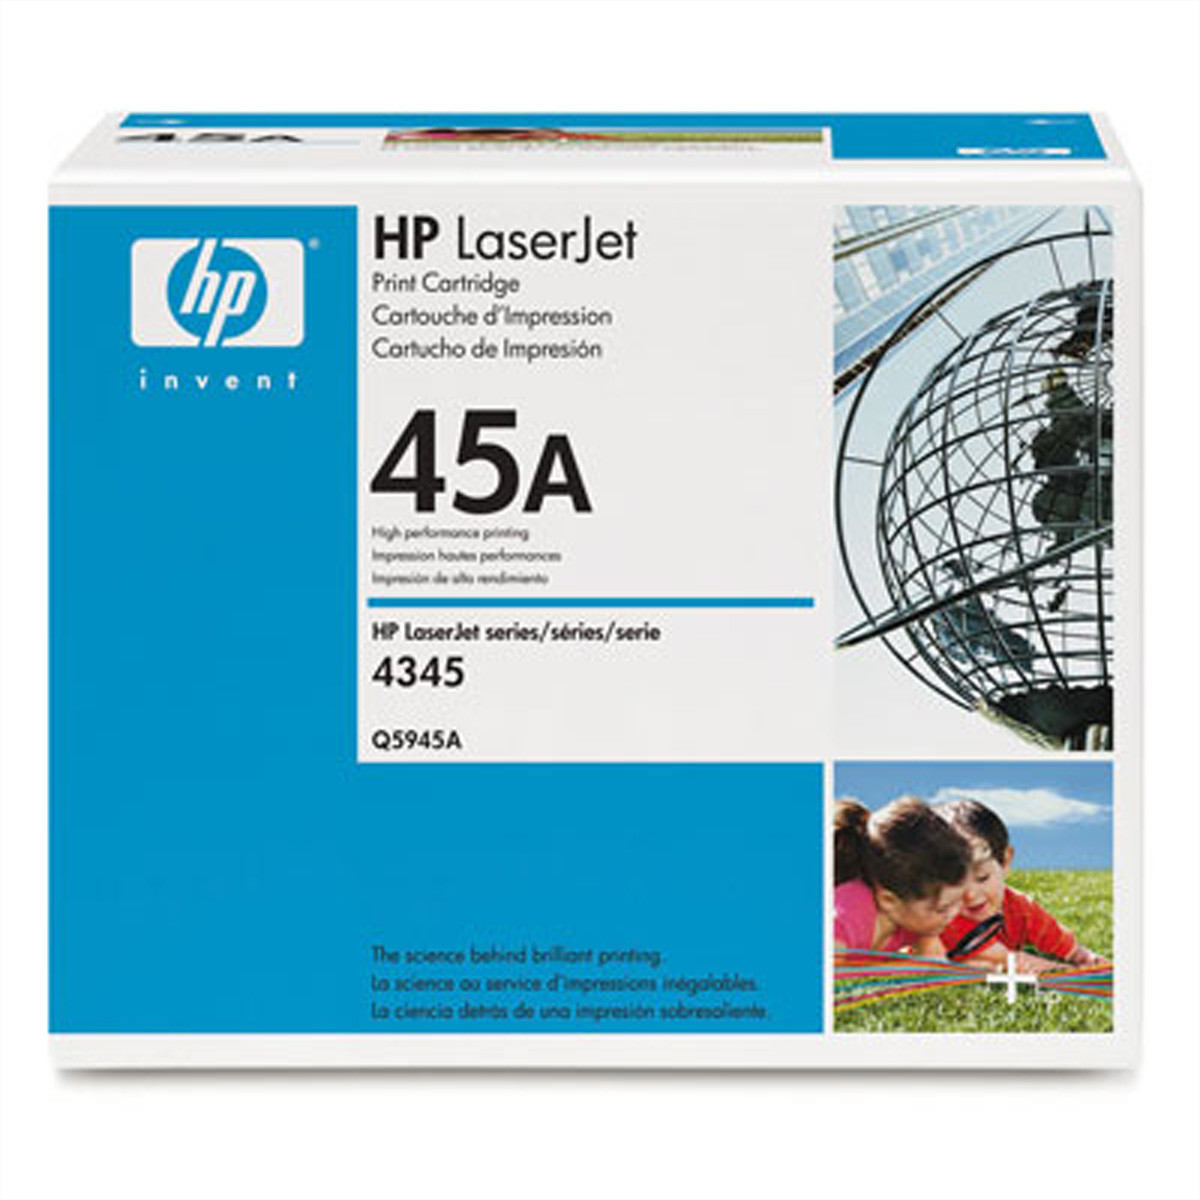 Toner Q5945A / schwarz / bis zu 18000 Seiten / für HP LaserJet 4345MFP